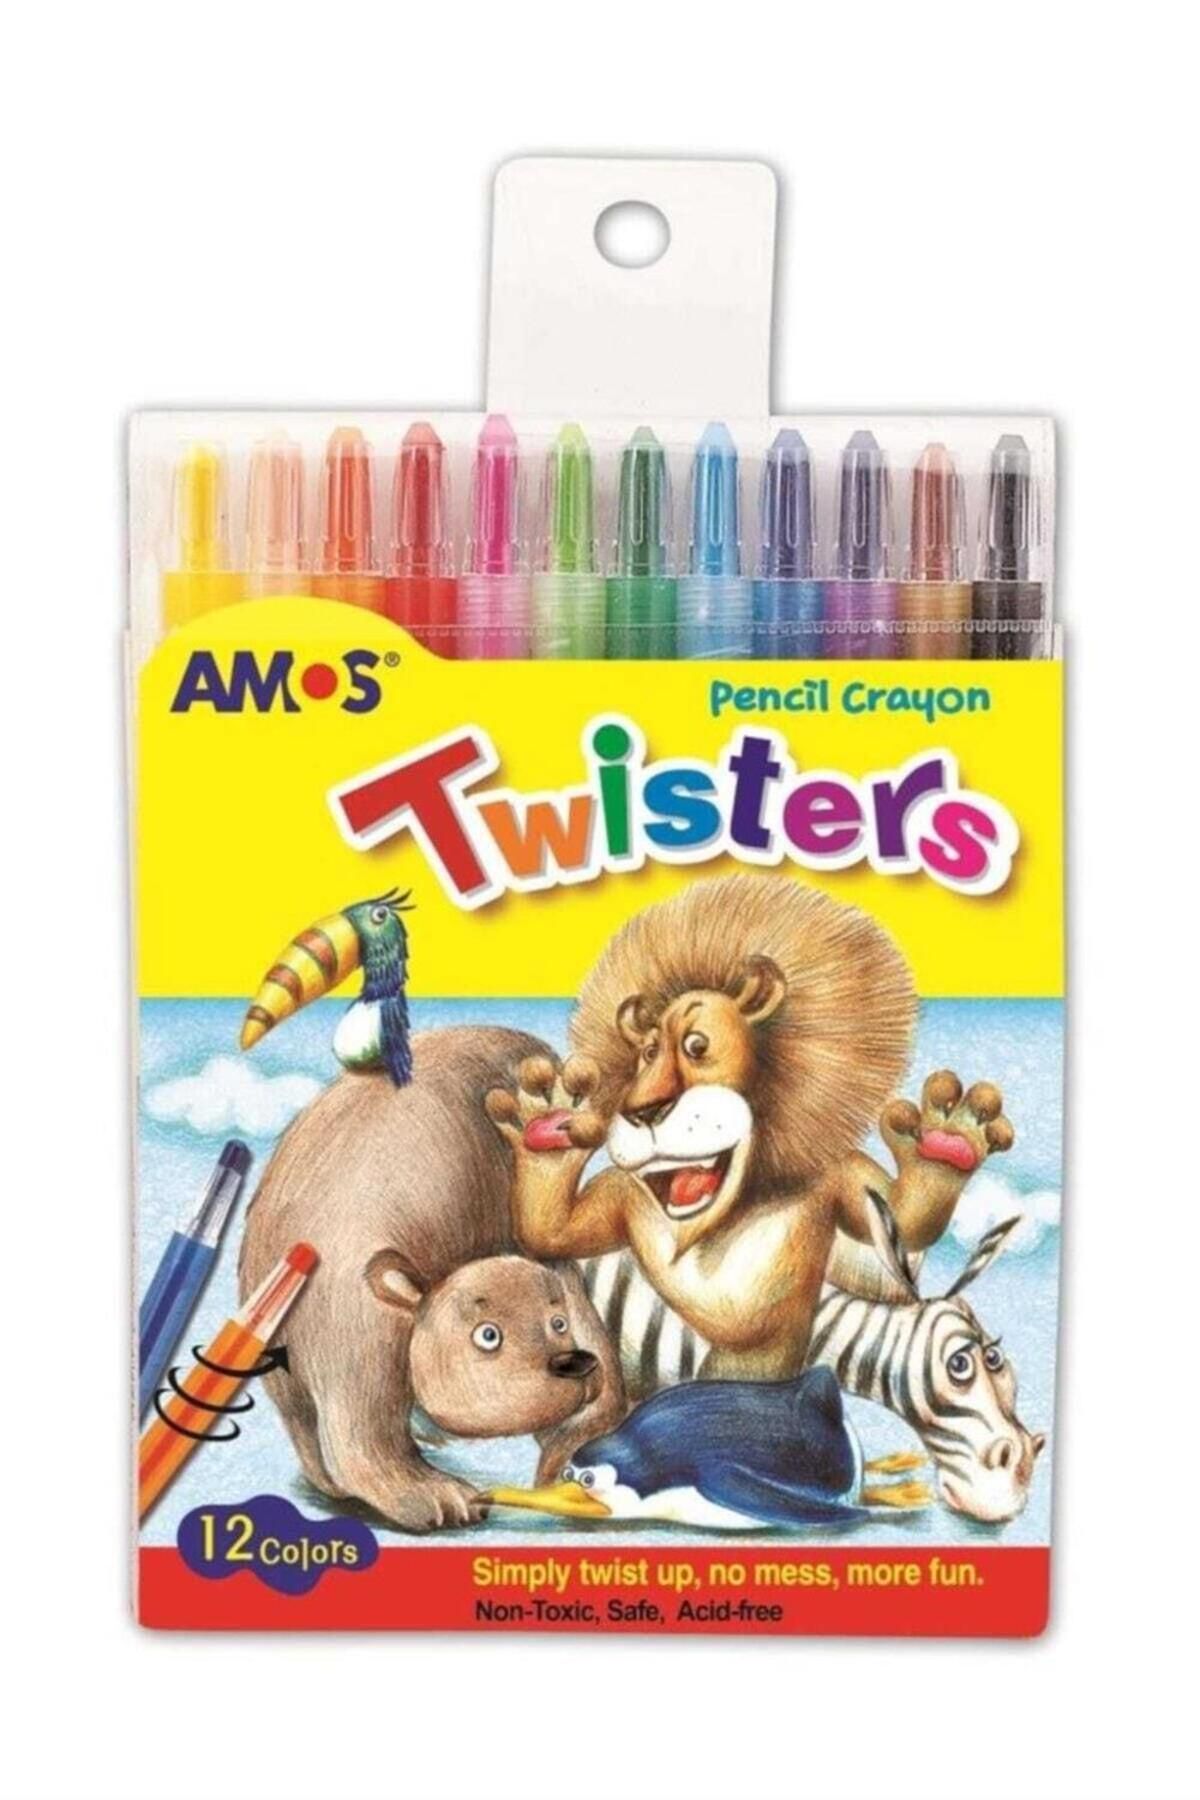 Amos Silky Twisters Üçü Bir Arada Jel Tipi Mum Boya 12 Renk